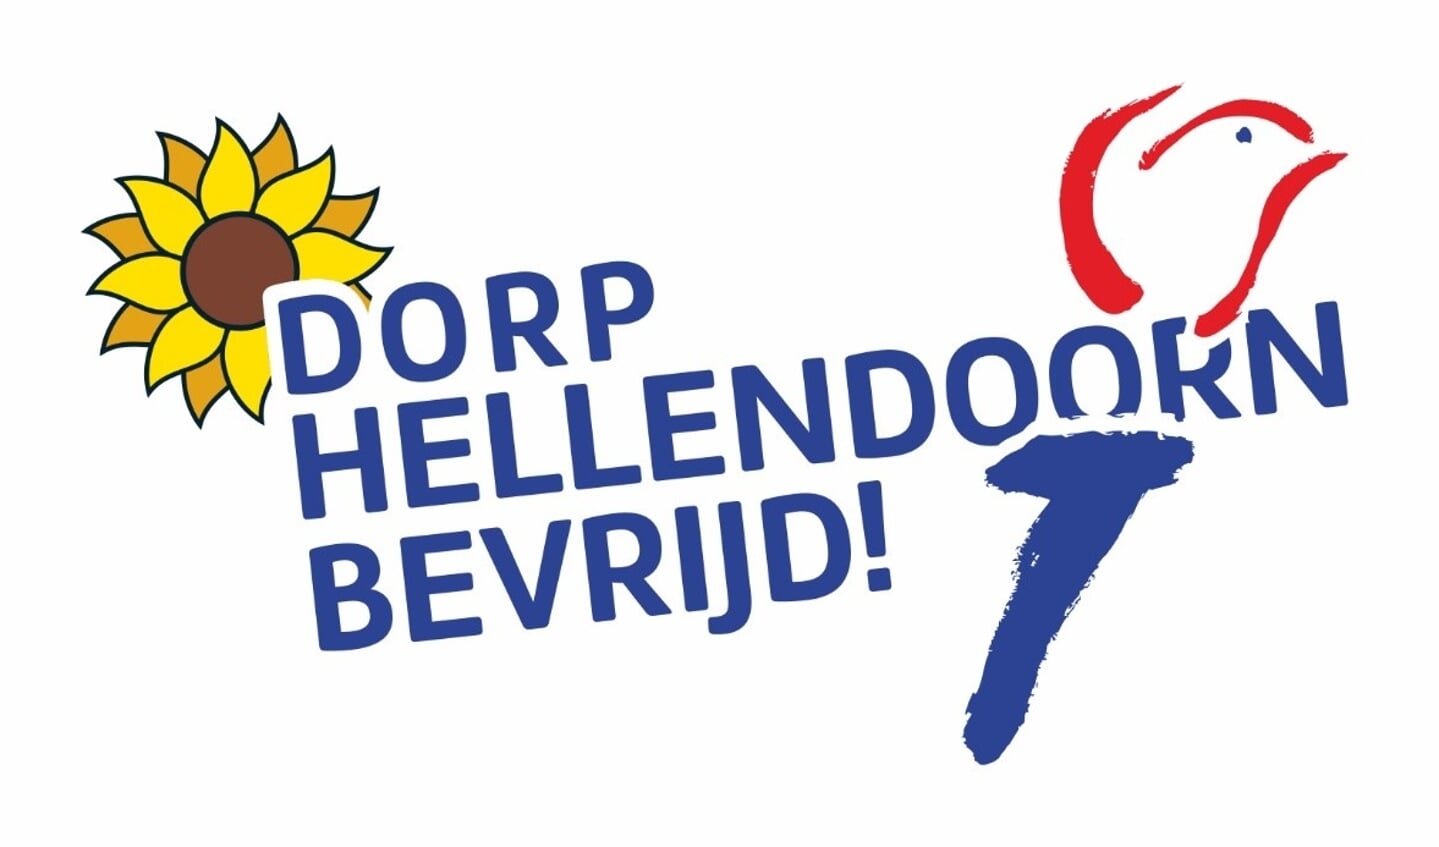 Het logo van 'Hellendoorn bevrijd!' dat dit jaar de straten moest sieren op vrolijk wapperende vlaggen.